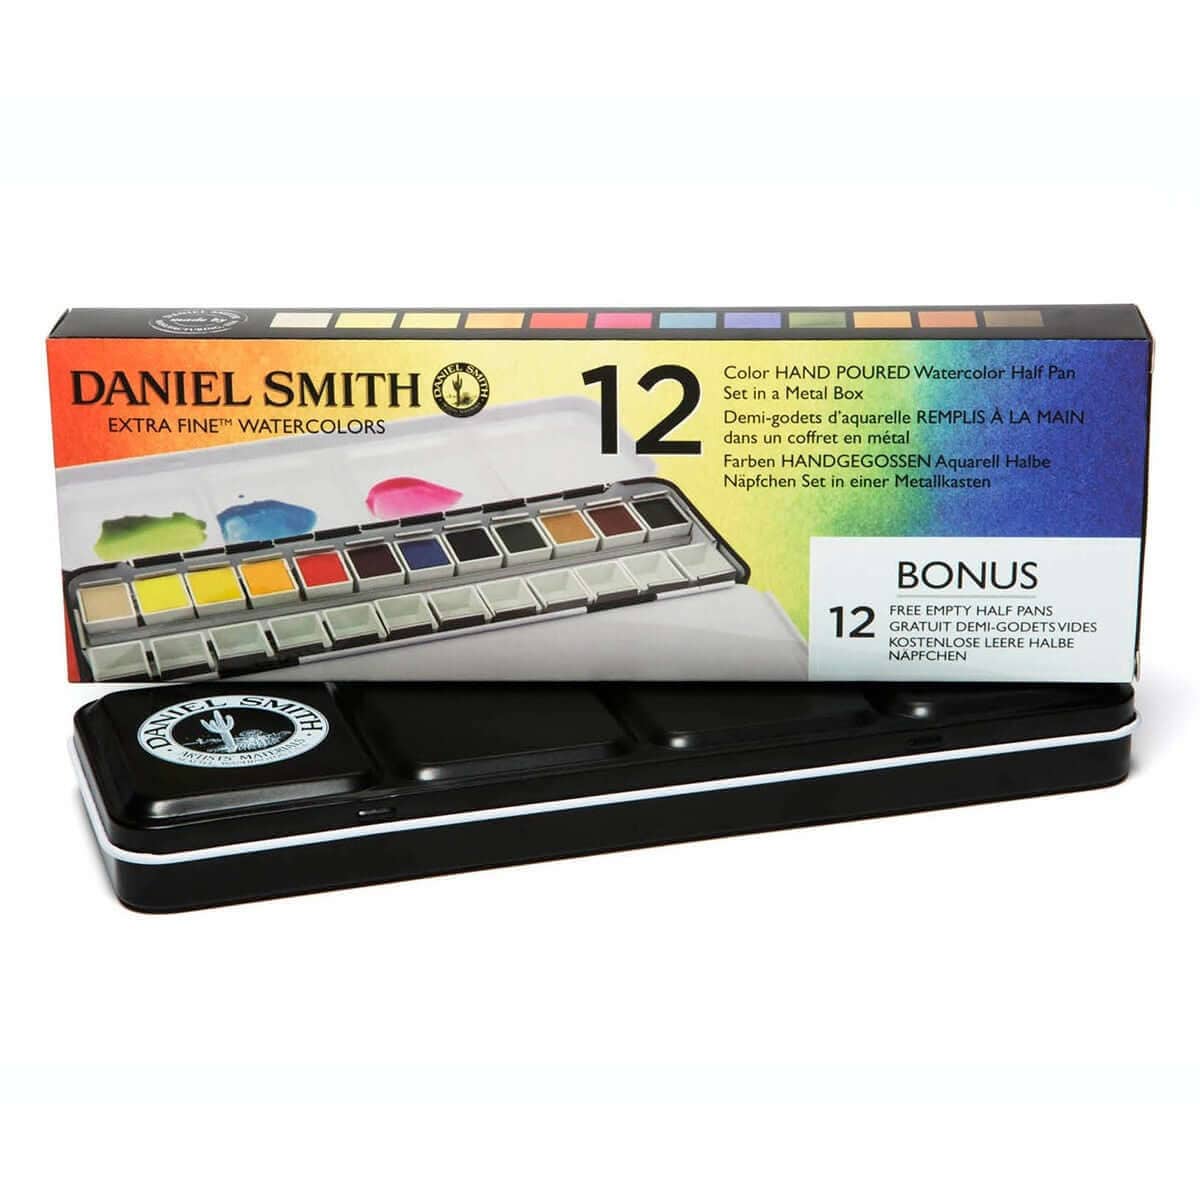 Daniel Smith Akvarelmaling 12 pans Daniel Smith hand poured pan set i metalbox